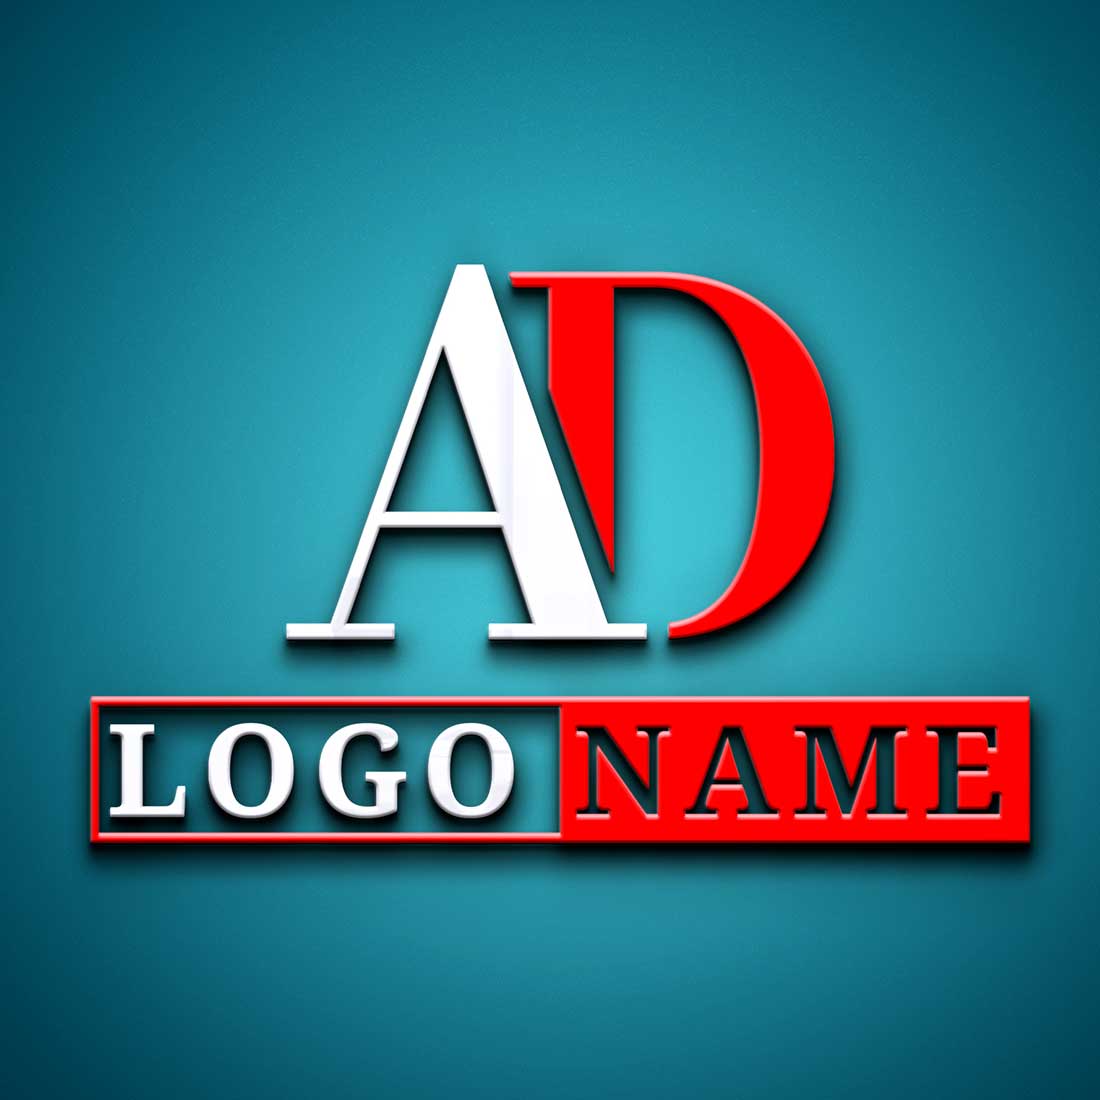 Modern (AD) Letter Logo Design in Illustrator - 100% Editable cover image.